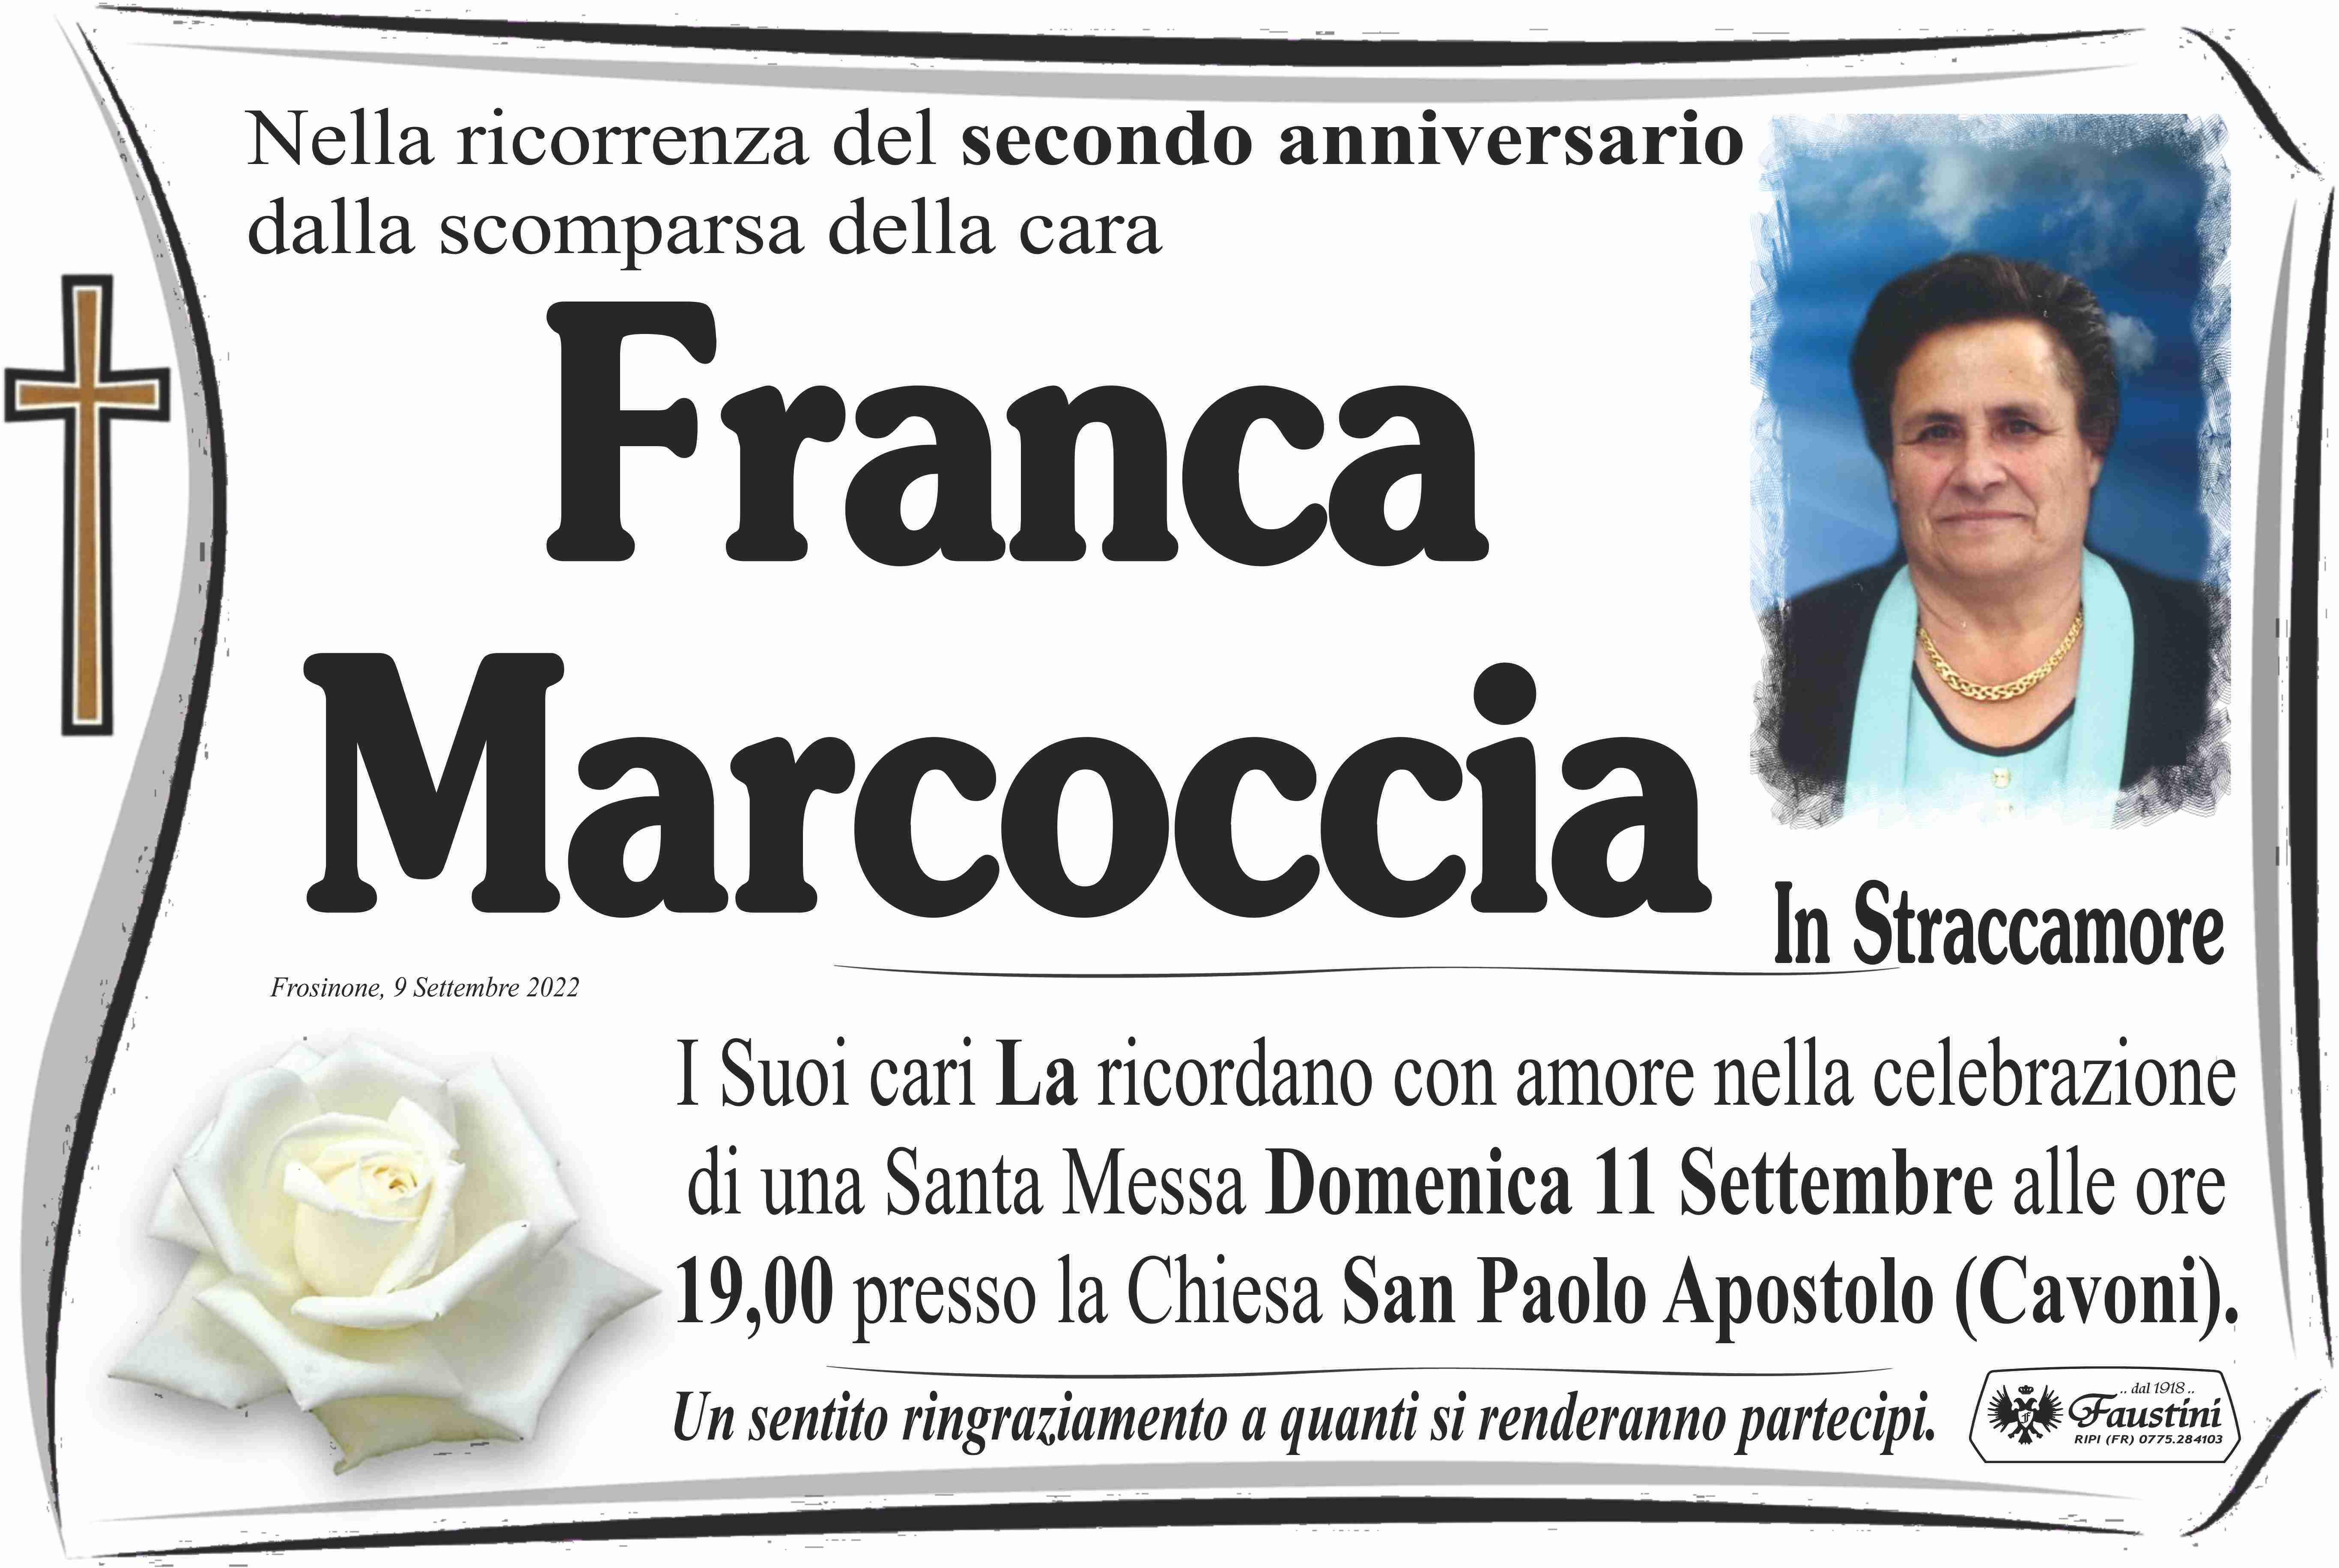 Franca Marcoccia